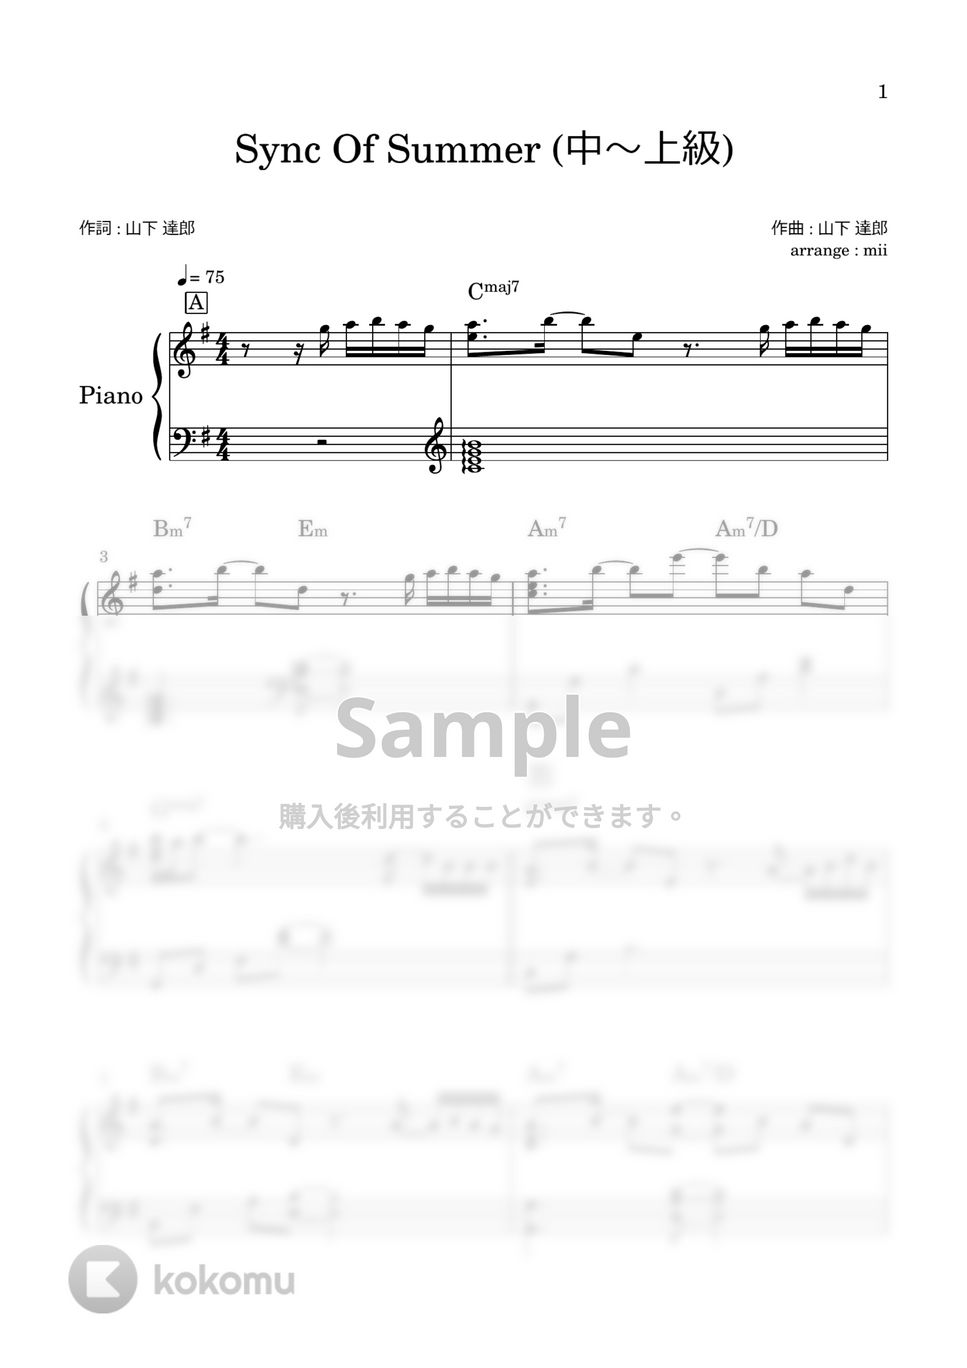 山下達郎 - Sync Of Summer (中～上級) by miiの楽譜棚